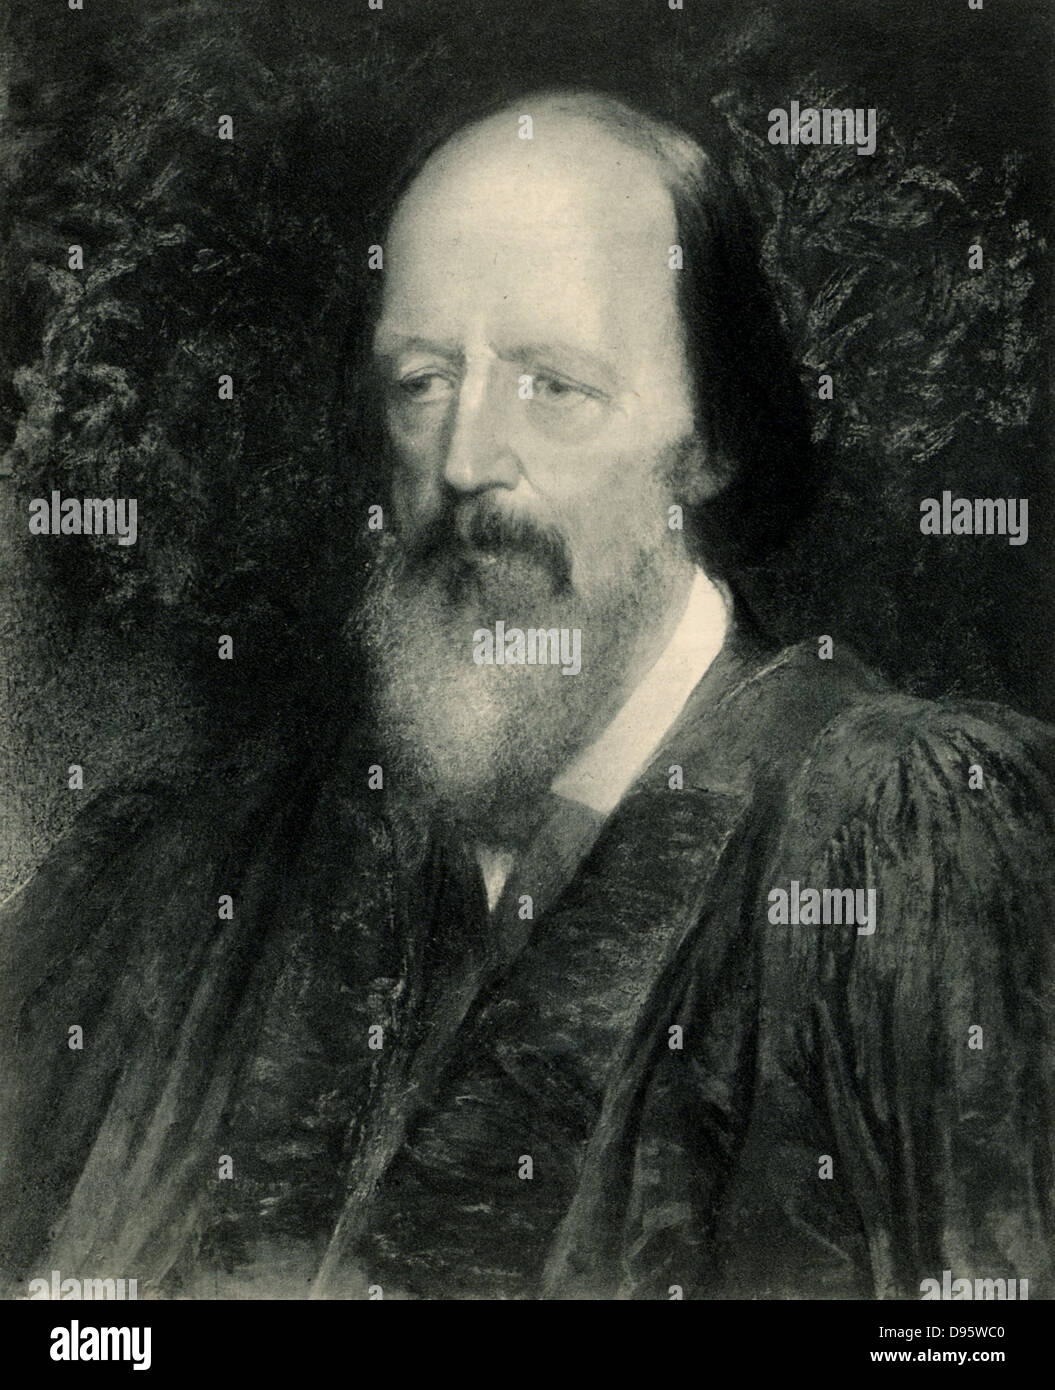 Alfred Lord Tennyson (1809-1892), englischer Dichter. Poet Laureate 1850. Lithografie nach dem Porträt von George Frederick Watts (1817-1904). Stockfoto